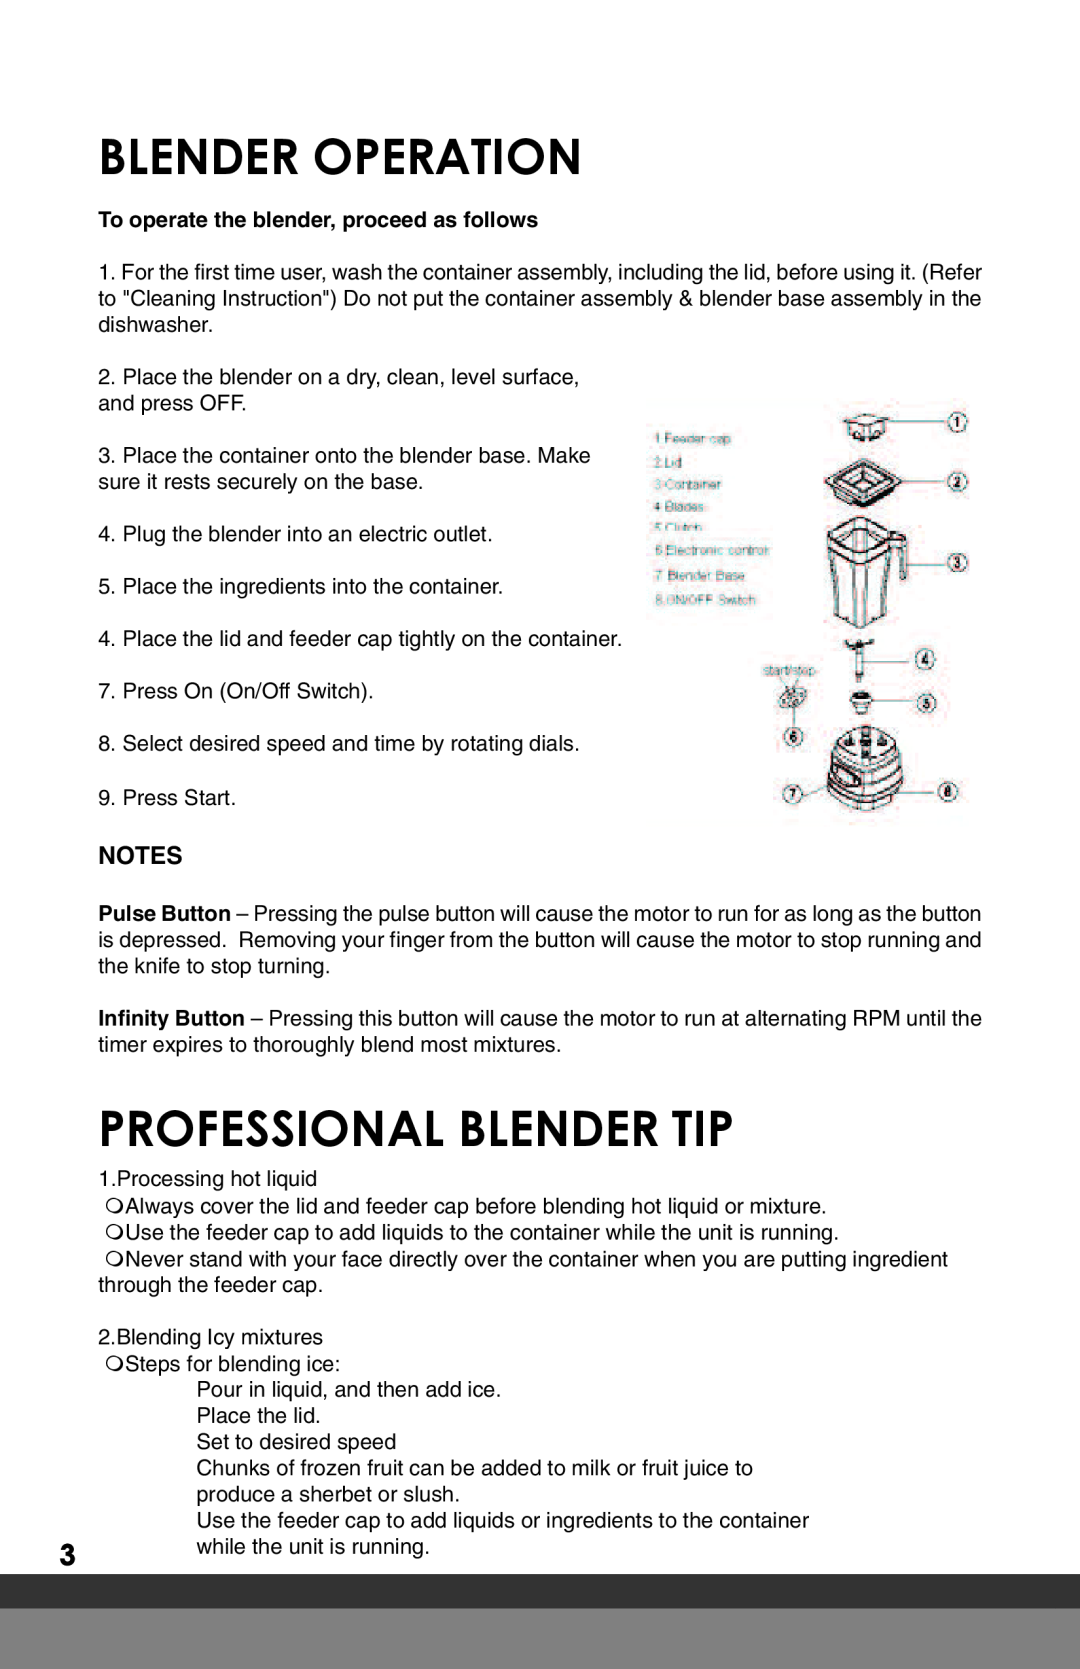 Omega BL600 manual Blender Operation, Professional Blender Tip, To operate the blender, proceed as follows 